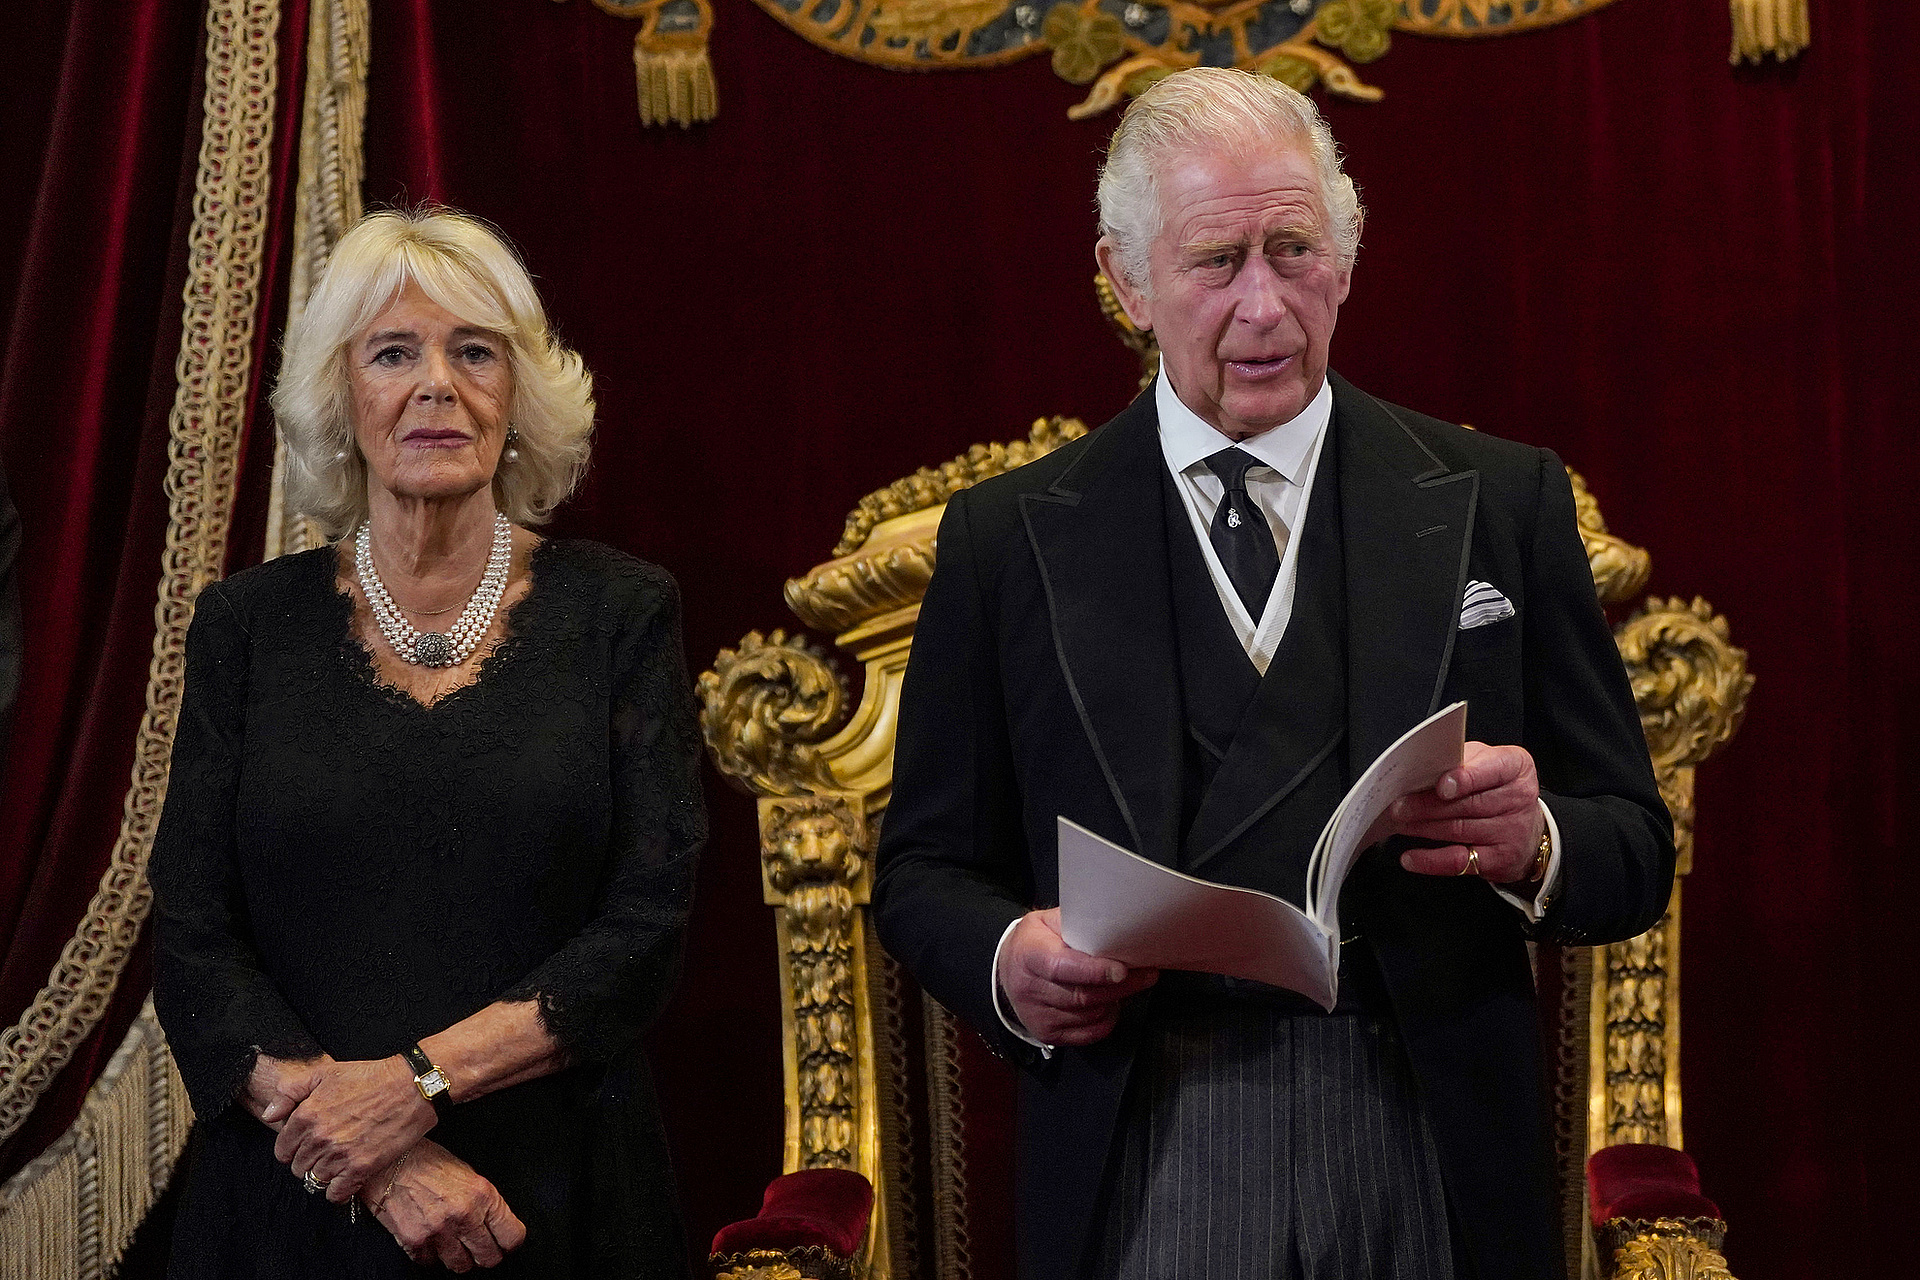 Camilla brit hitves-királynő (balra) hallgatja, ahogy III. Károly brit király beszél a csatlakozási tanács ülésén a Szent Jakab-palotában.